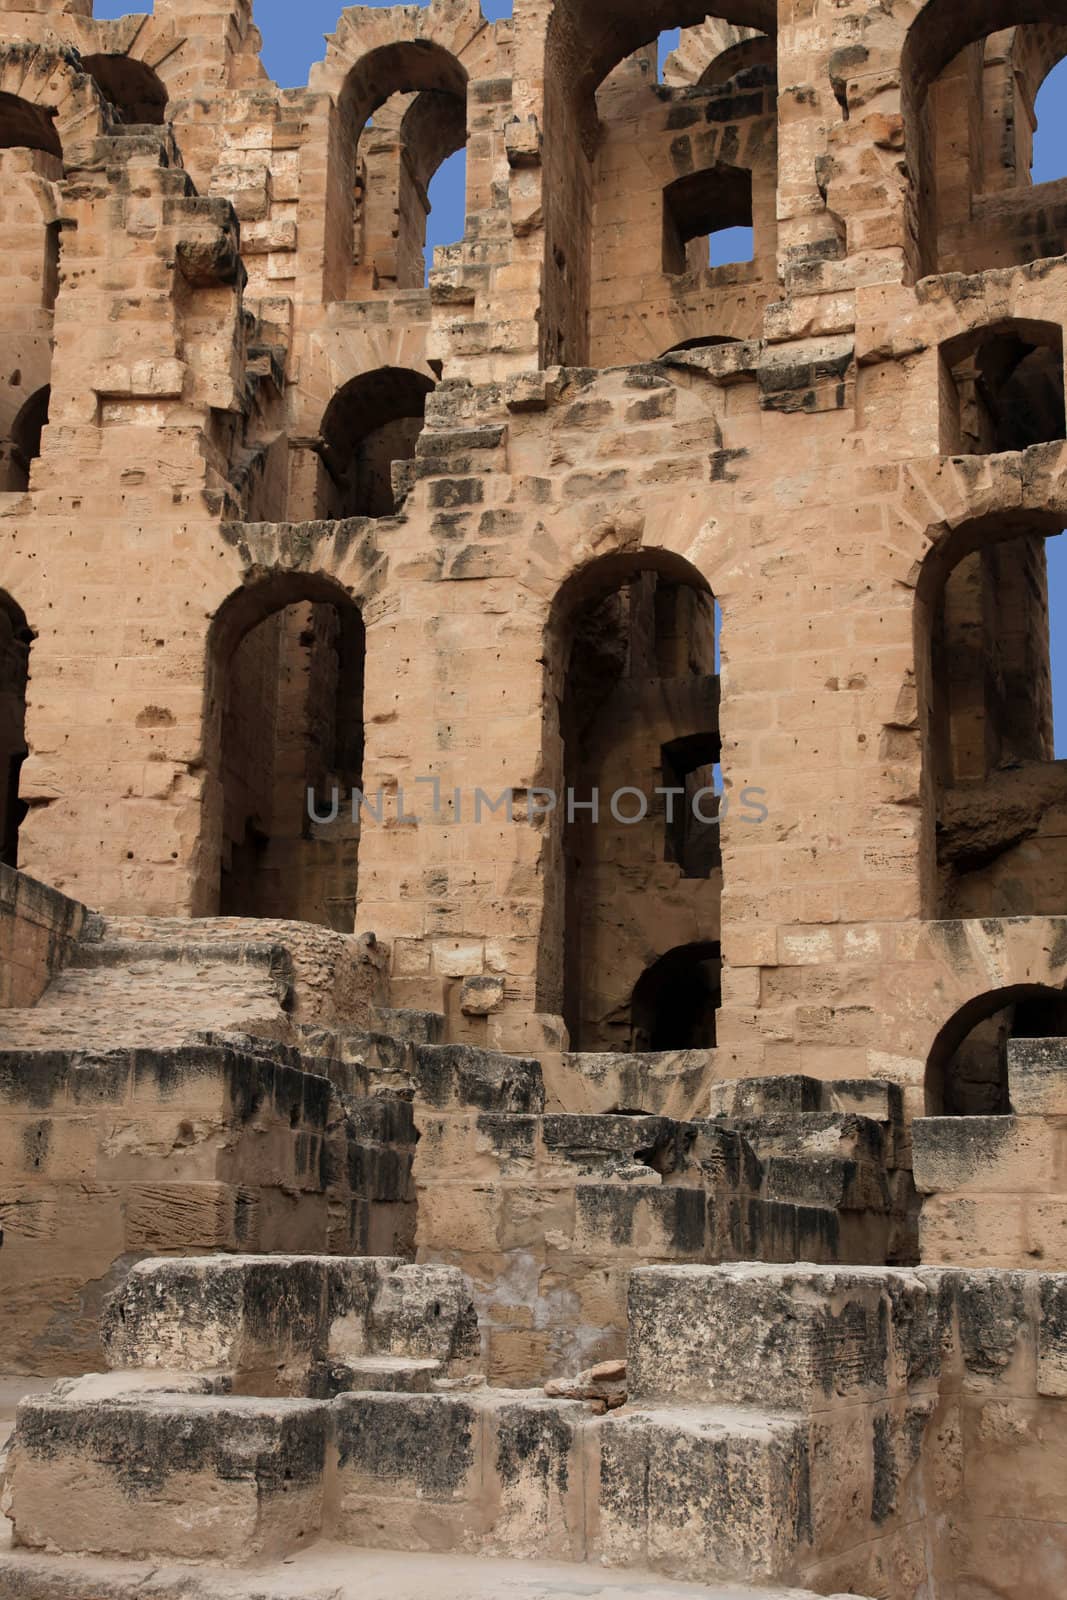 The amphitheater in El-Jem, Tunisia by atlas